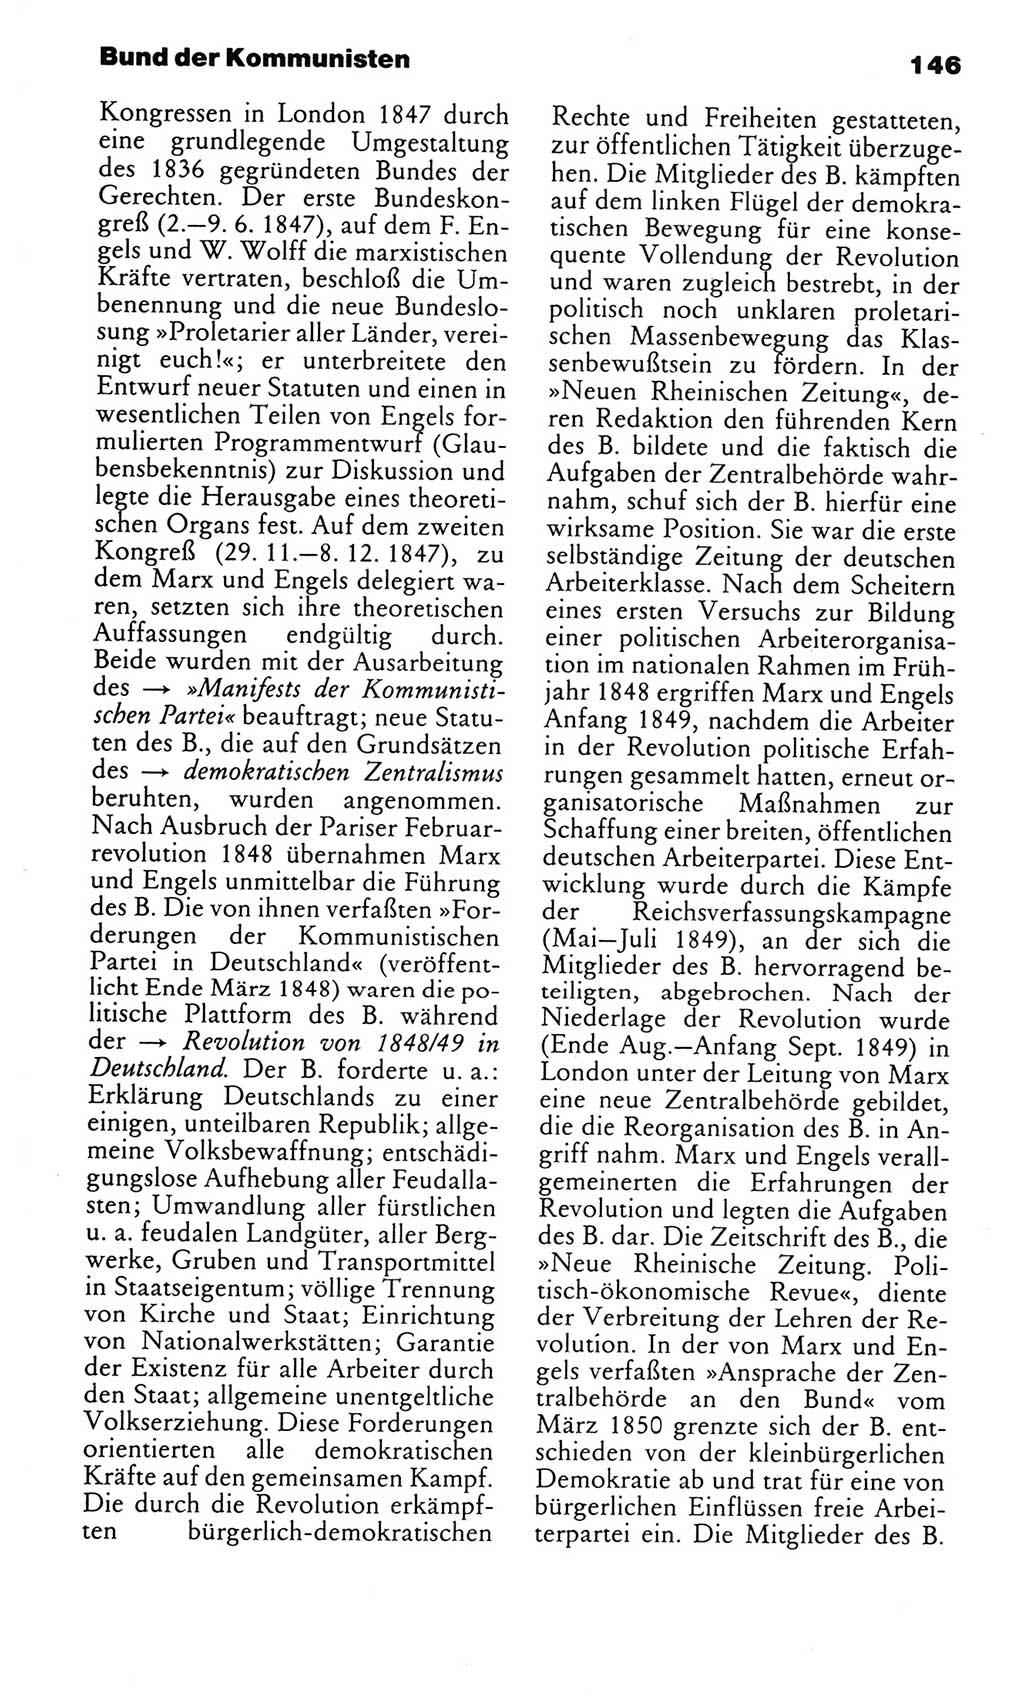 Kleines politisches Wörterbuch [Deutsche Demokratische Republik (DDR)] 1983, Seite 146 (Kl. pol. Wb. DDR 1983, S. 146)